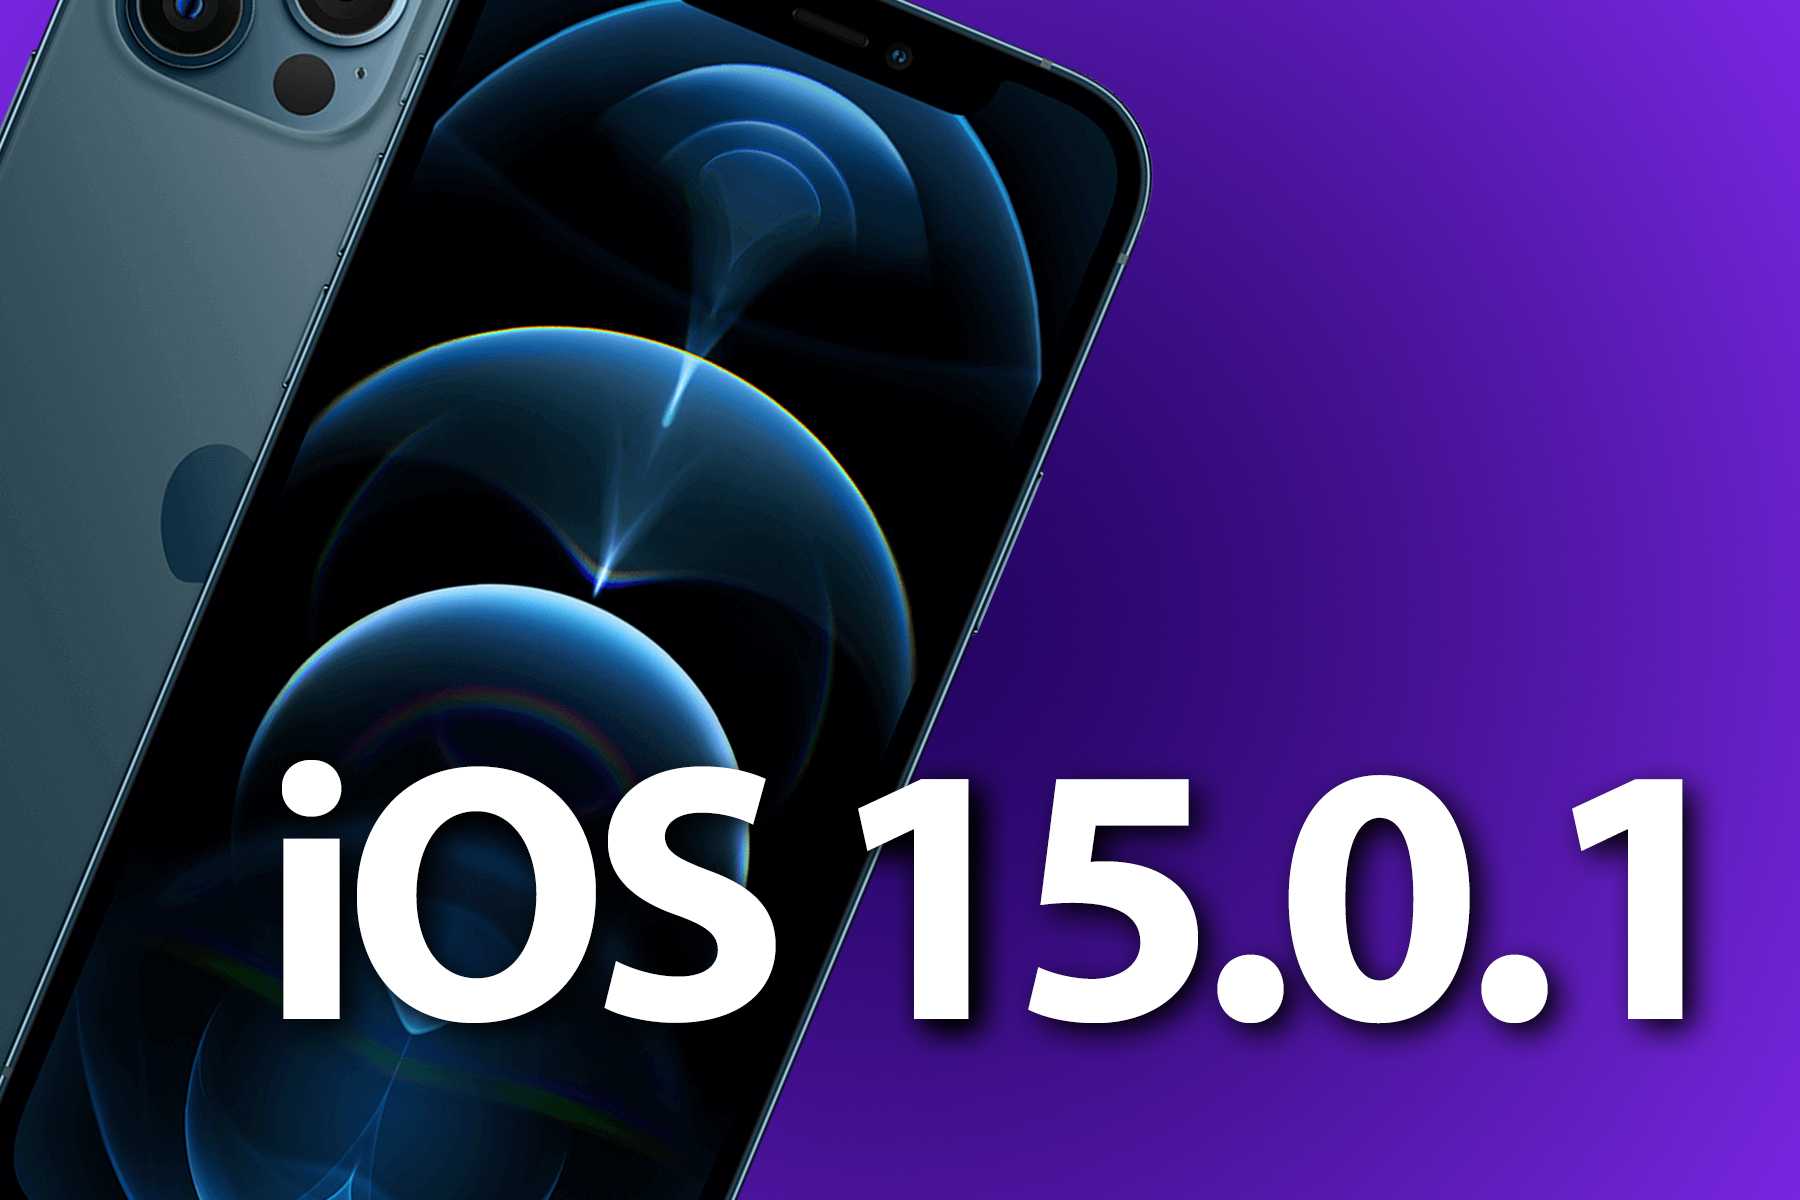 Вышла iOS 15.0.1 — что нового